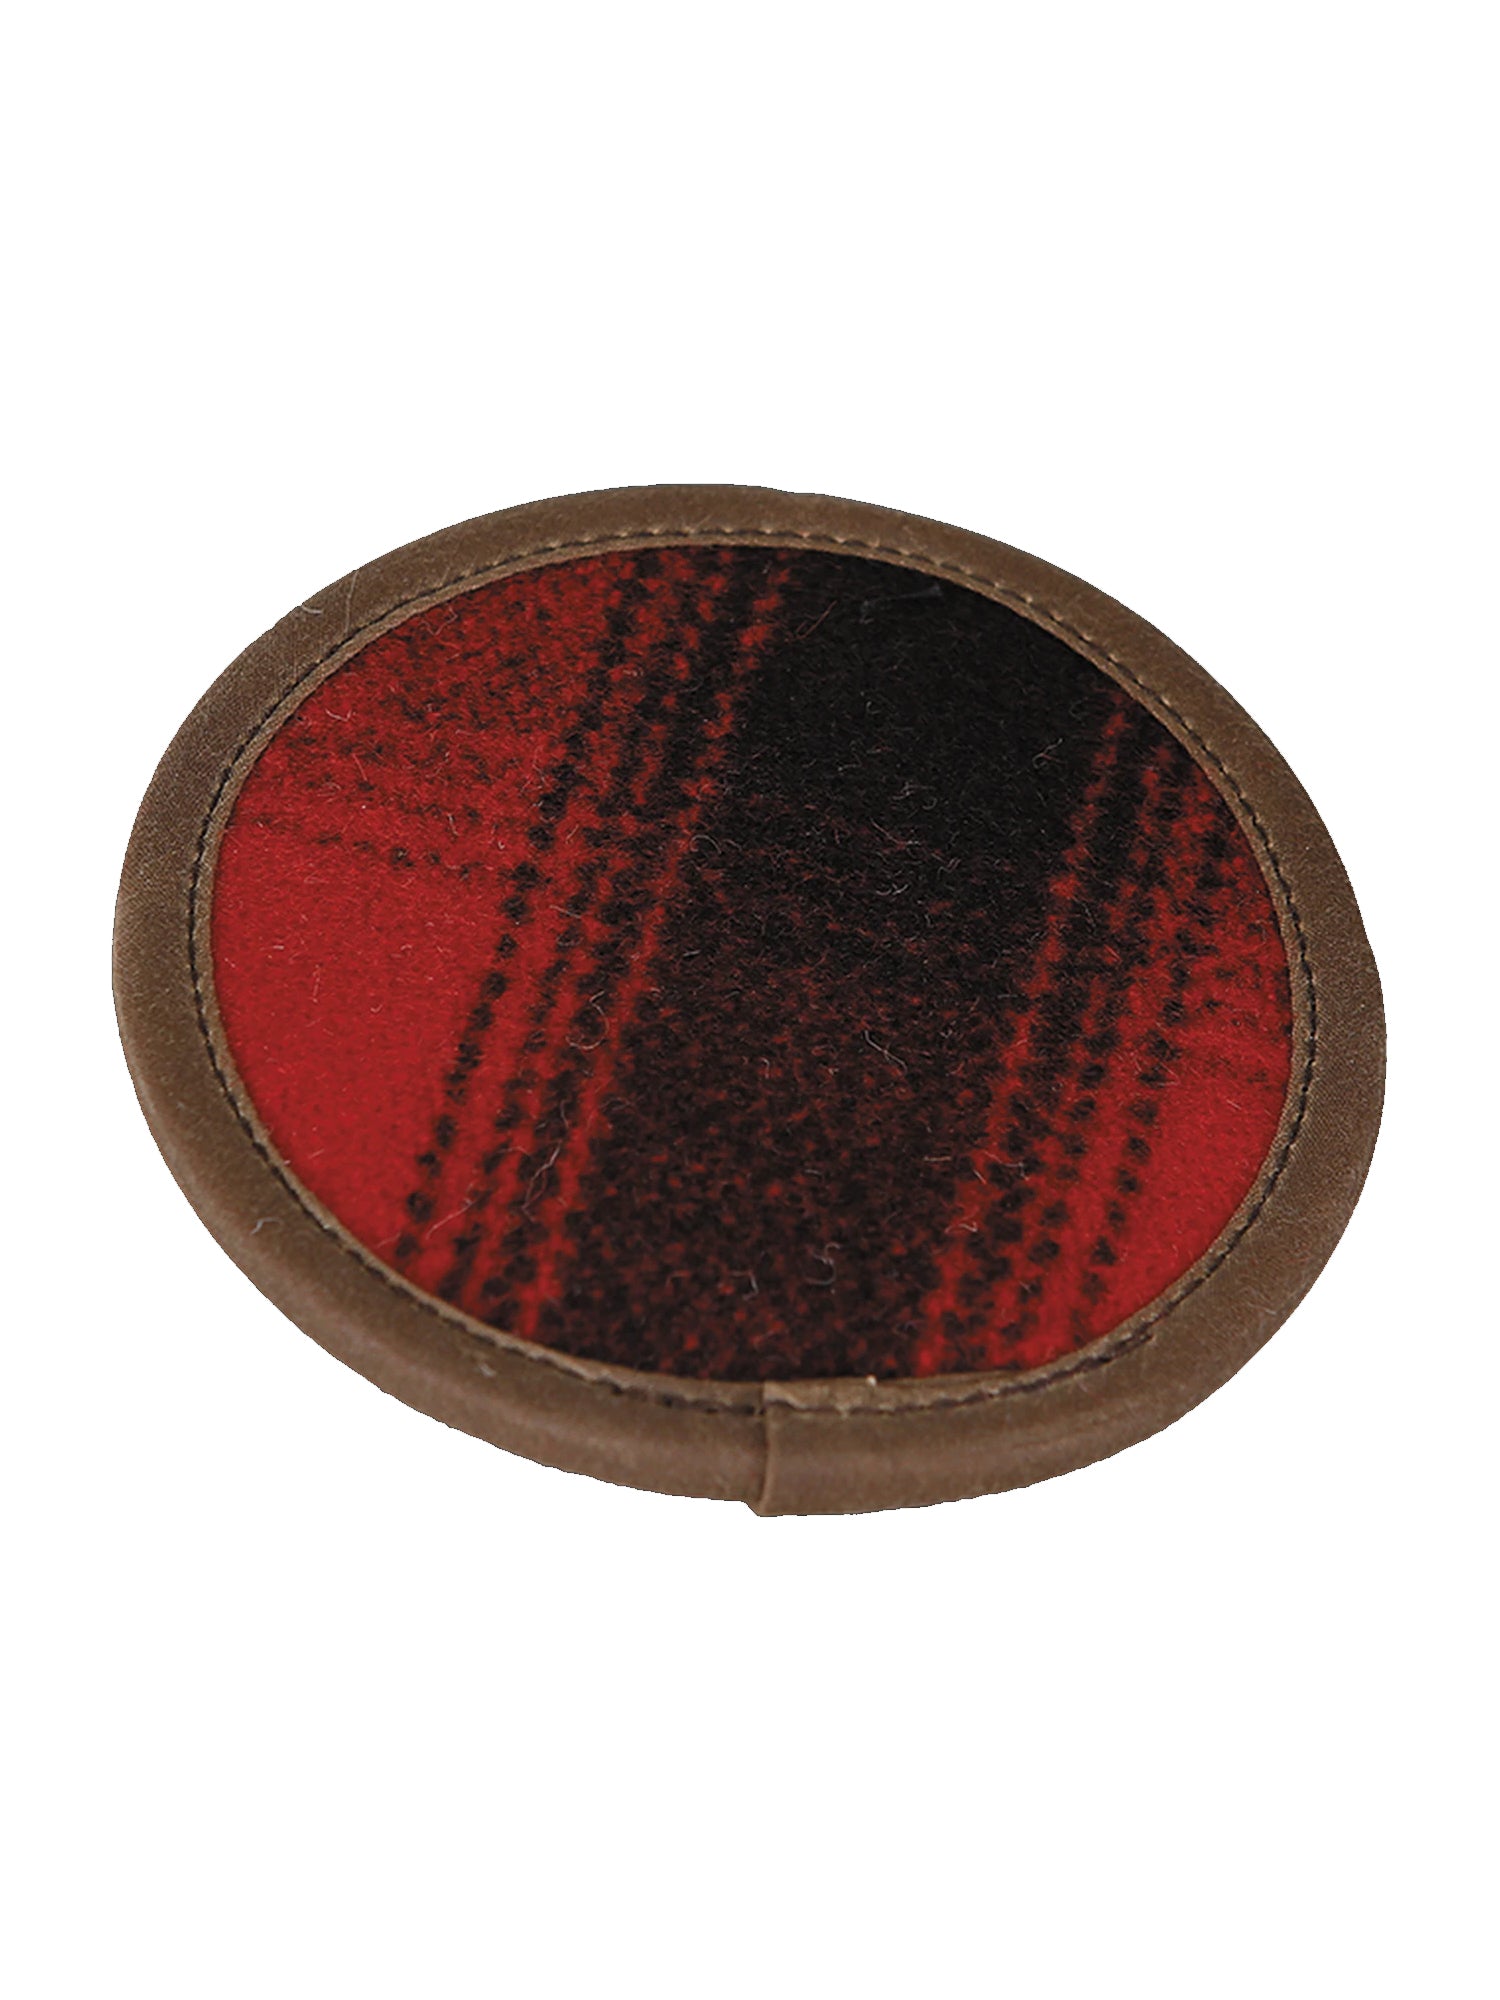 Buy red-black-plaid Stormy Kromer Wool Coaster Set of 4 in Red / Black